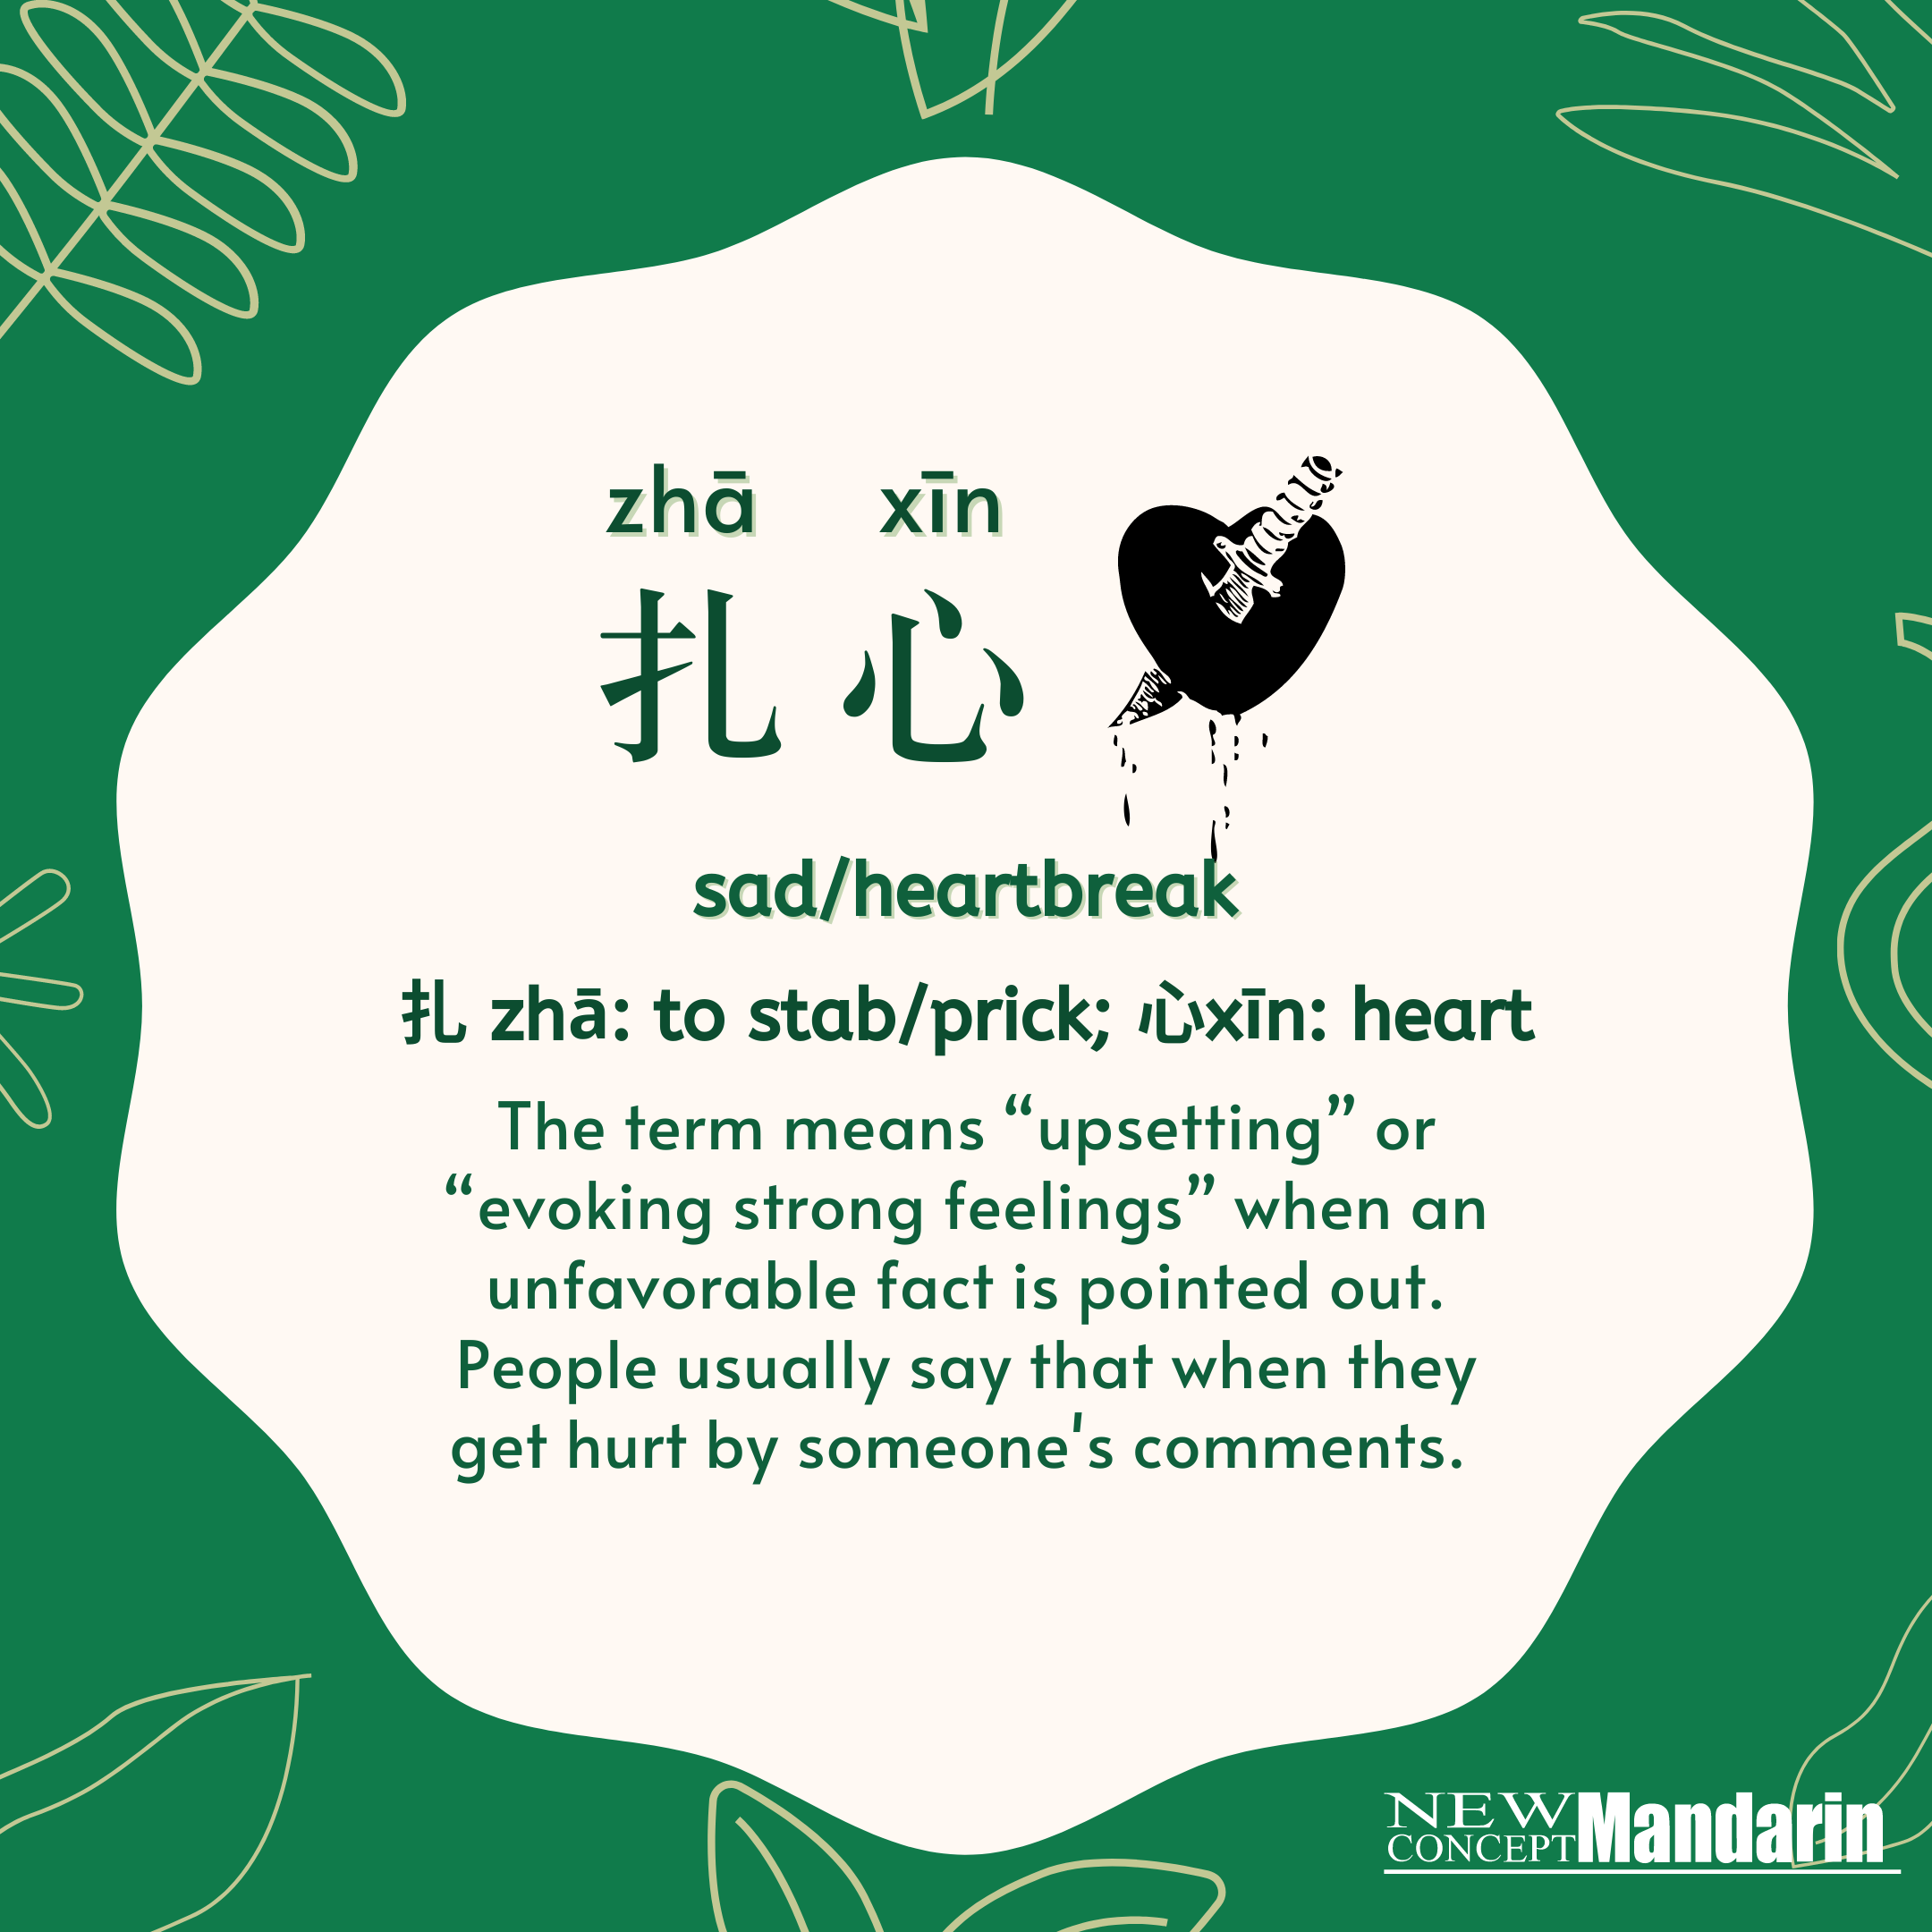 扎心 zhā xīn  sad/heartbreak. 扎zhā: to stab/prick; 心xīn: heart. The term means 